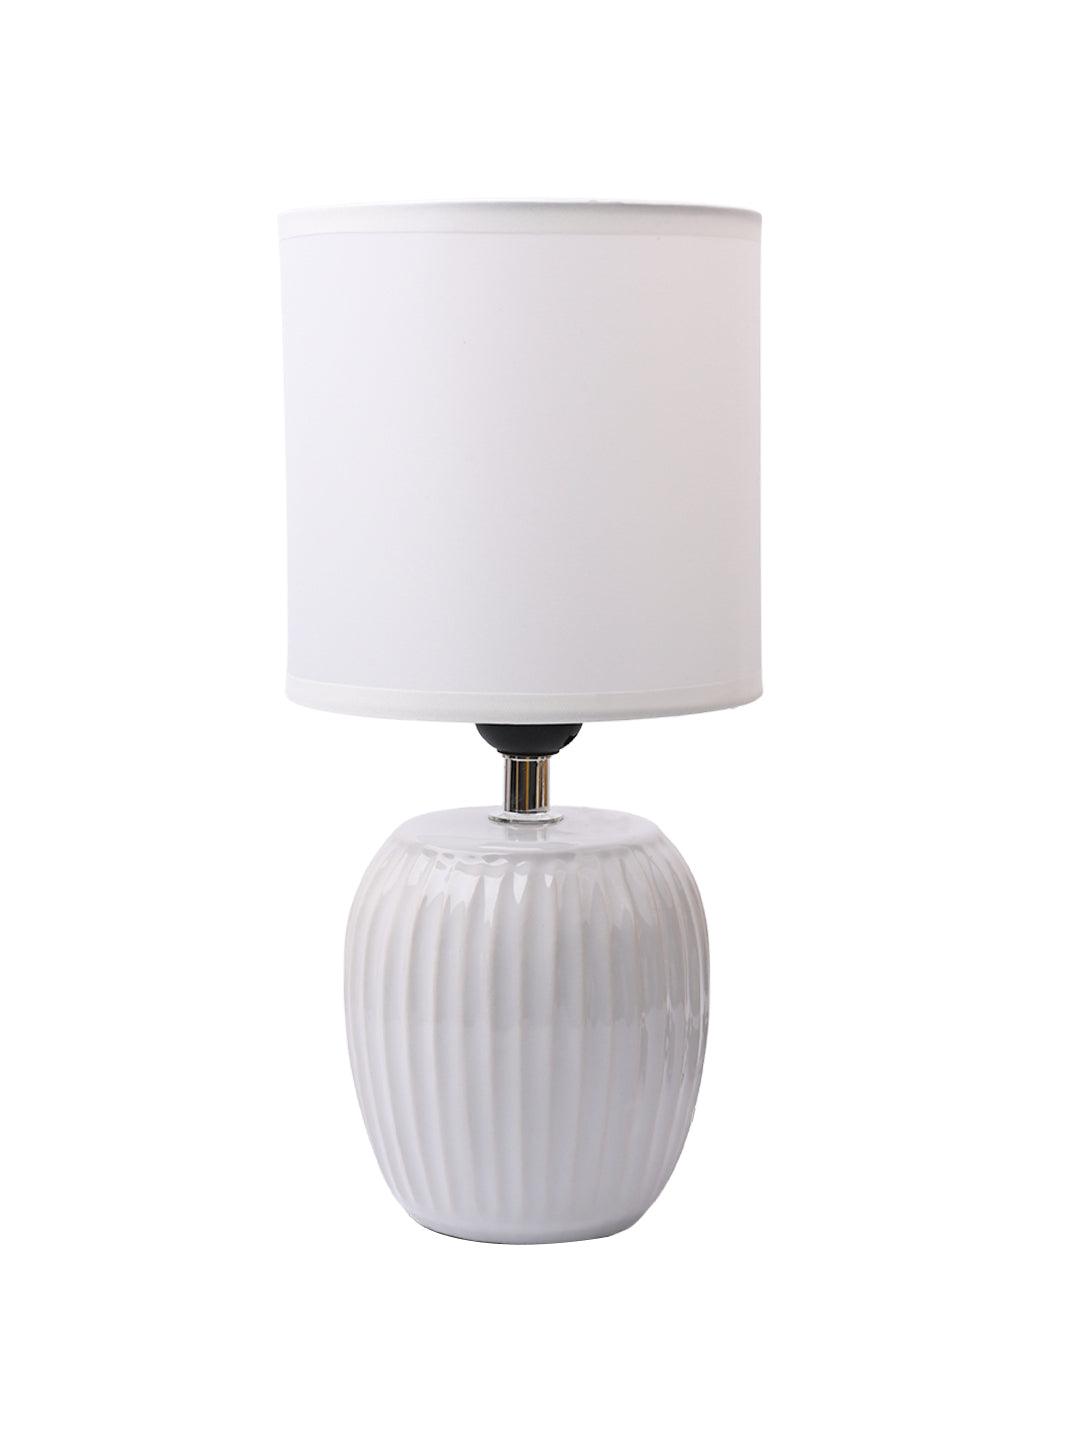 Stylish White Table Lamp - MARKET99